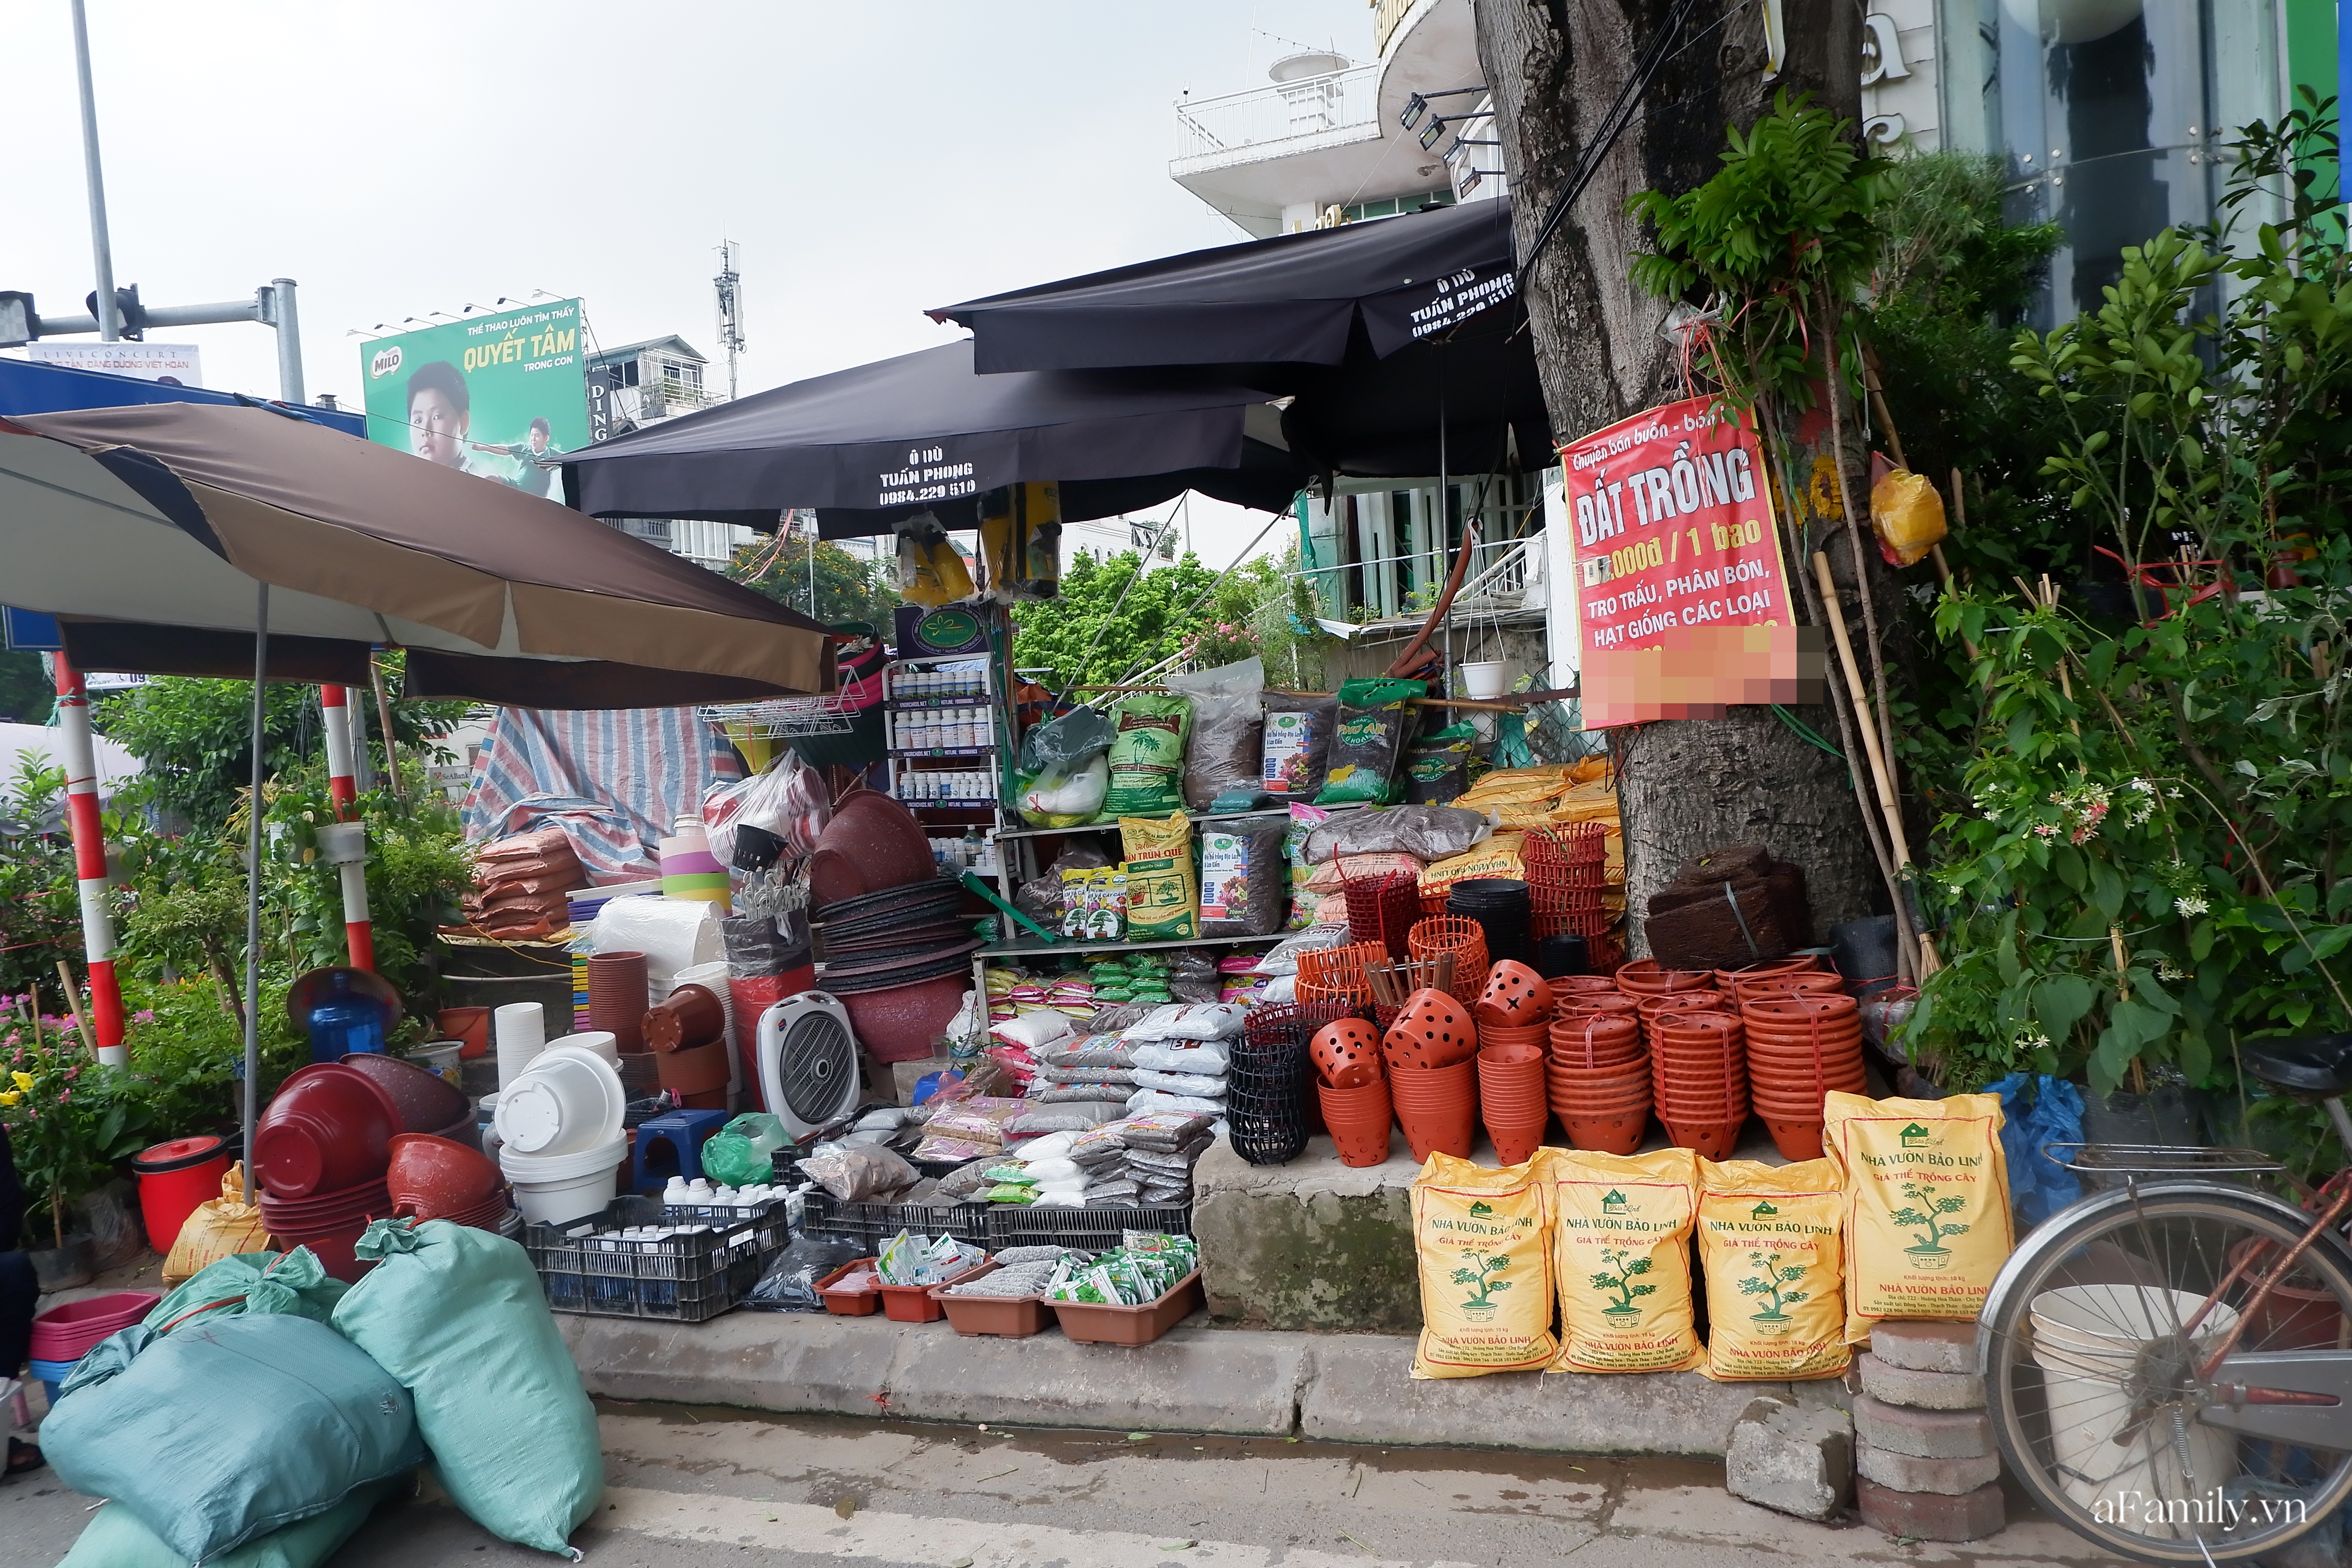 Đi chợ Bưởi mua cây và con giống: Mộc mạc nét quê từ cách bán cho tới cả giá thành ngay giữa thủ đô Hà Nội - Ảnh 8.